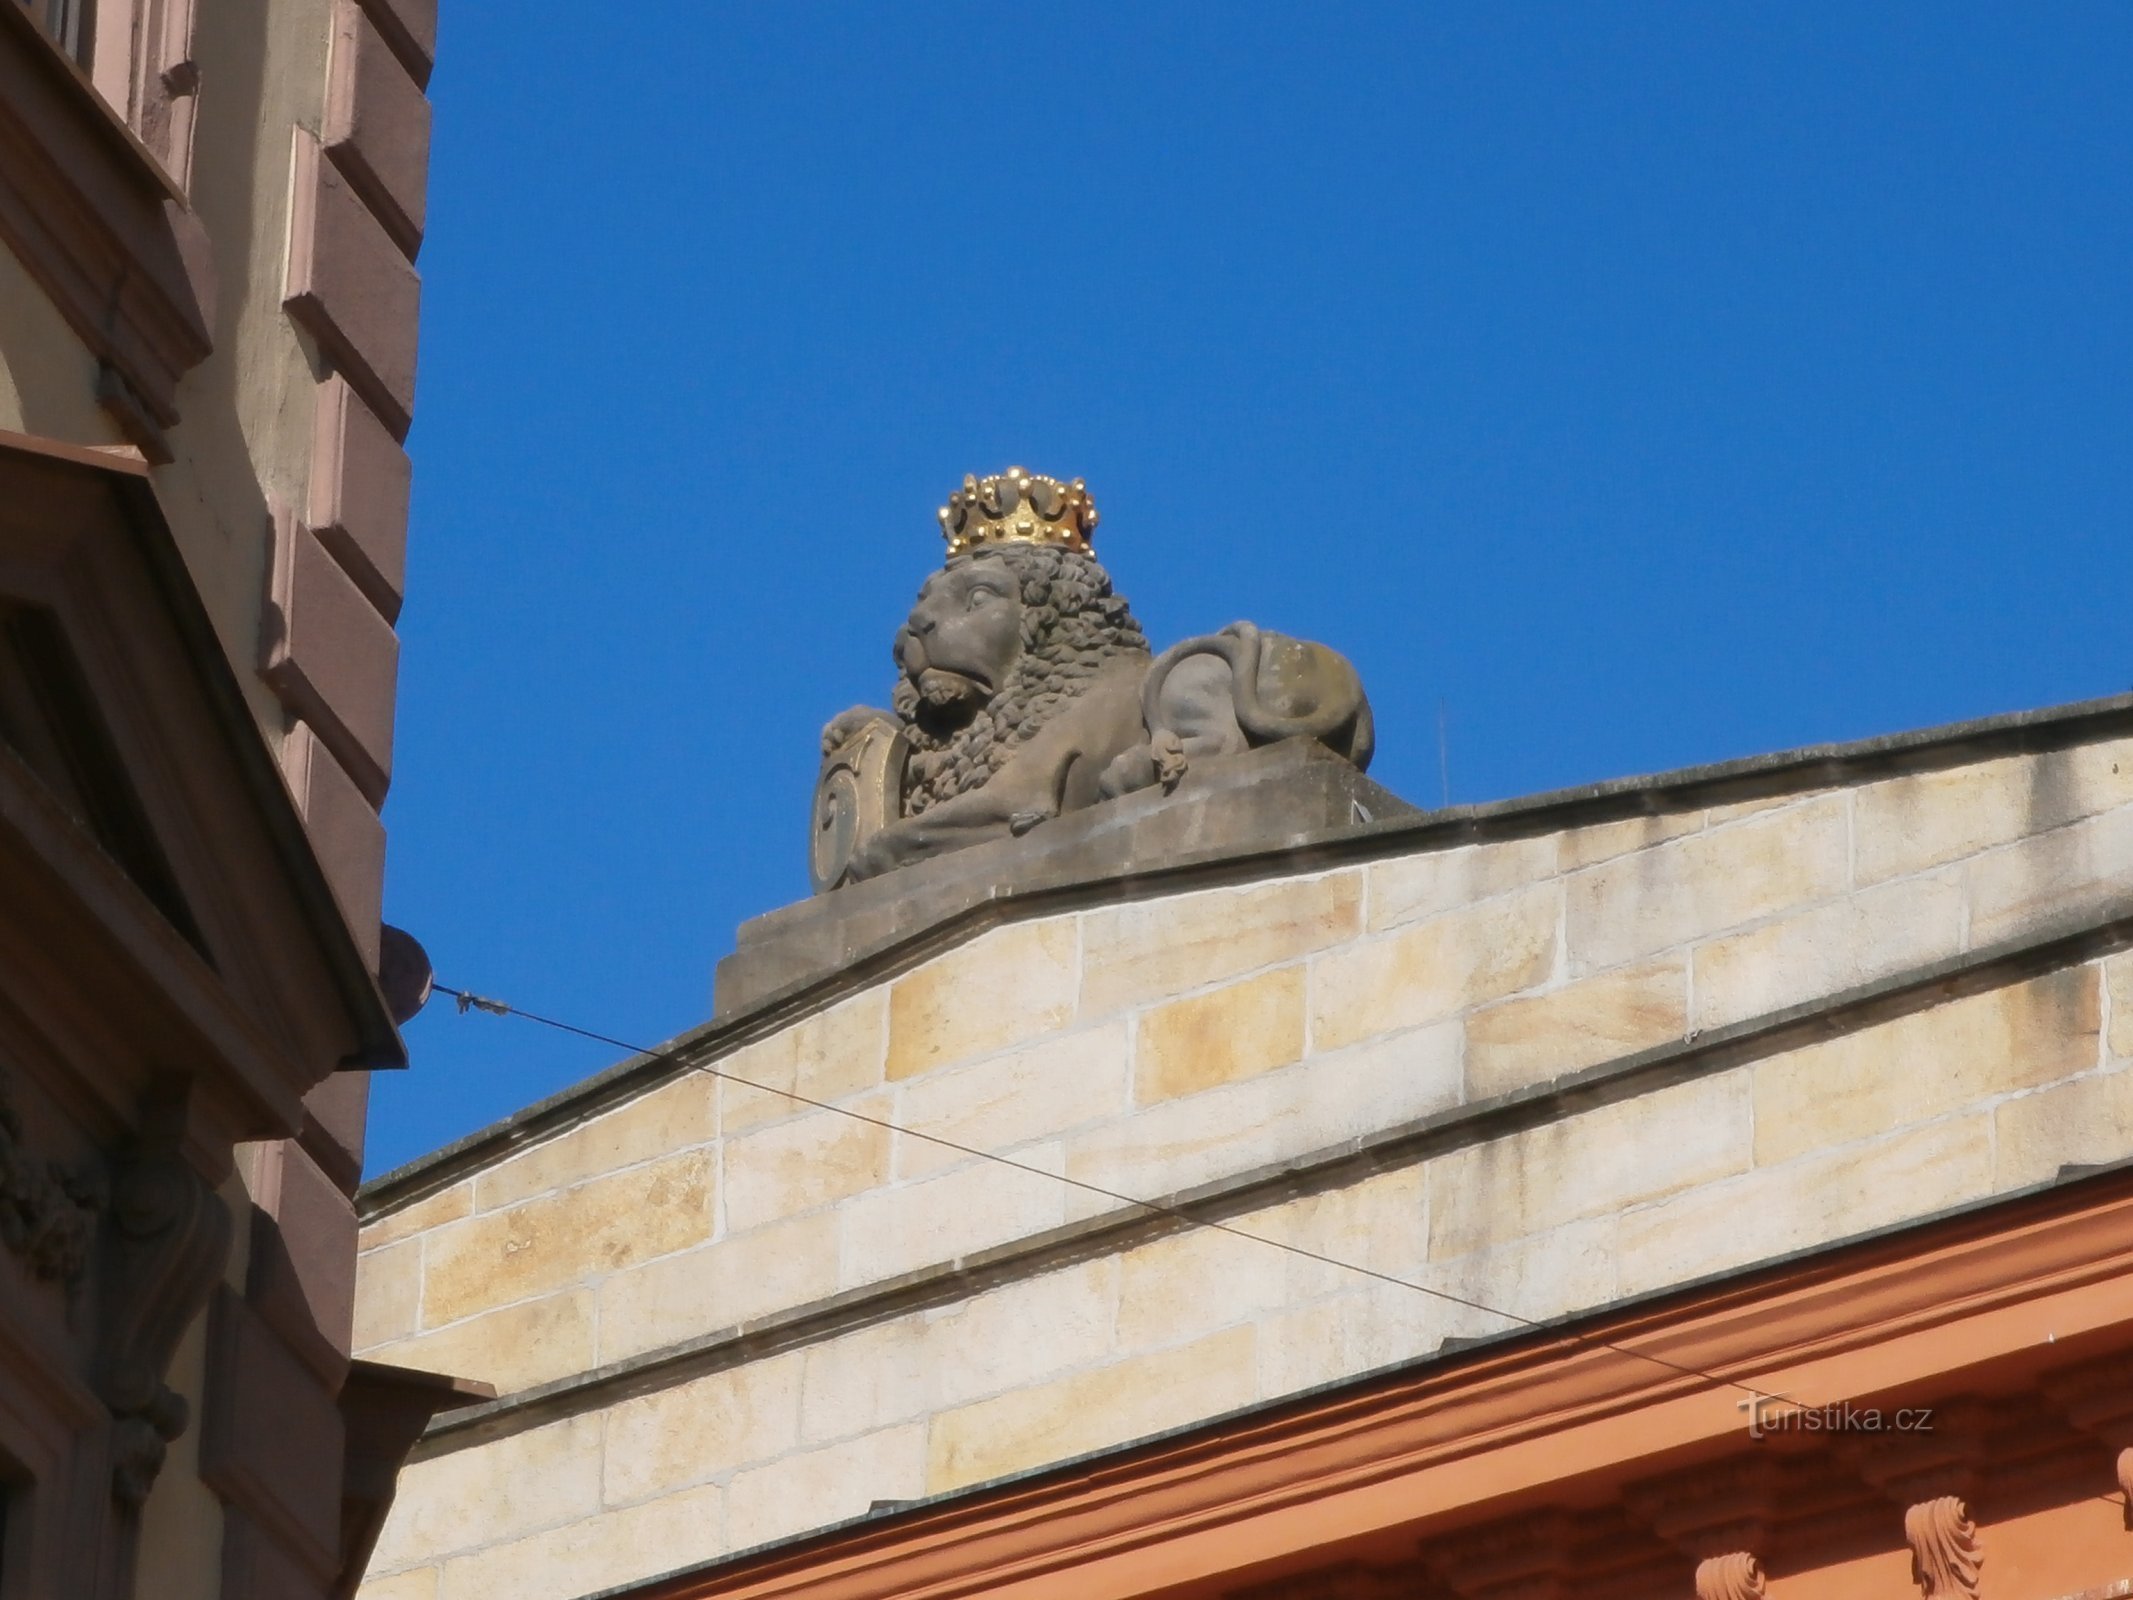 Άγαλμα λιονταριού στο Νο. 230 (Hradec Králové, 18.6.2016/XNUMX/XNUMX)